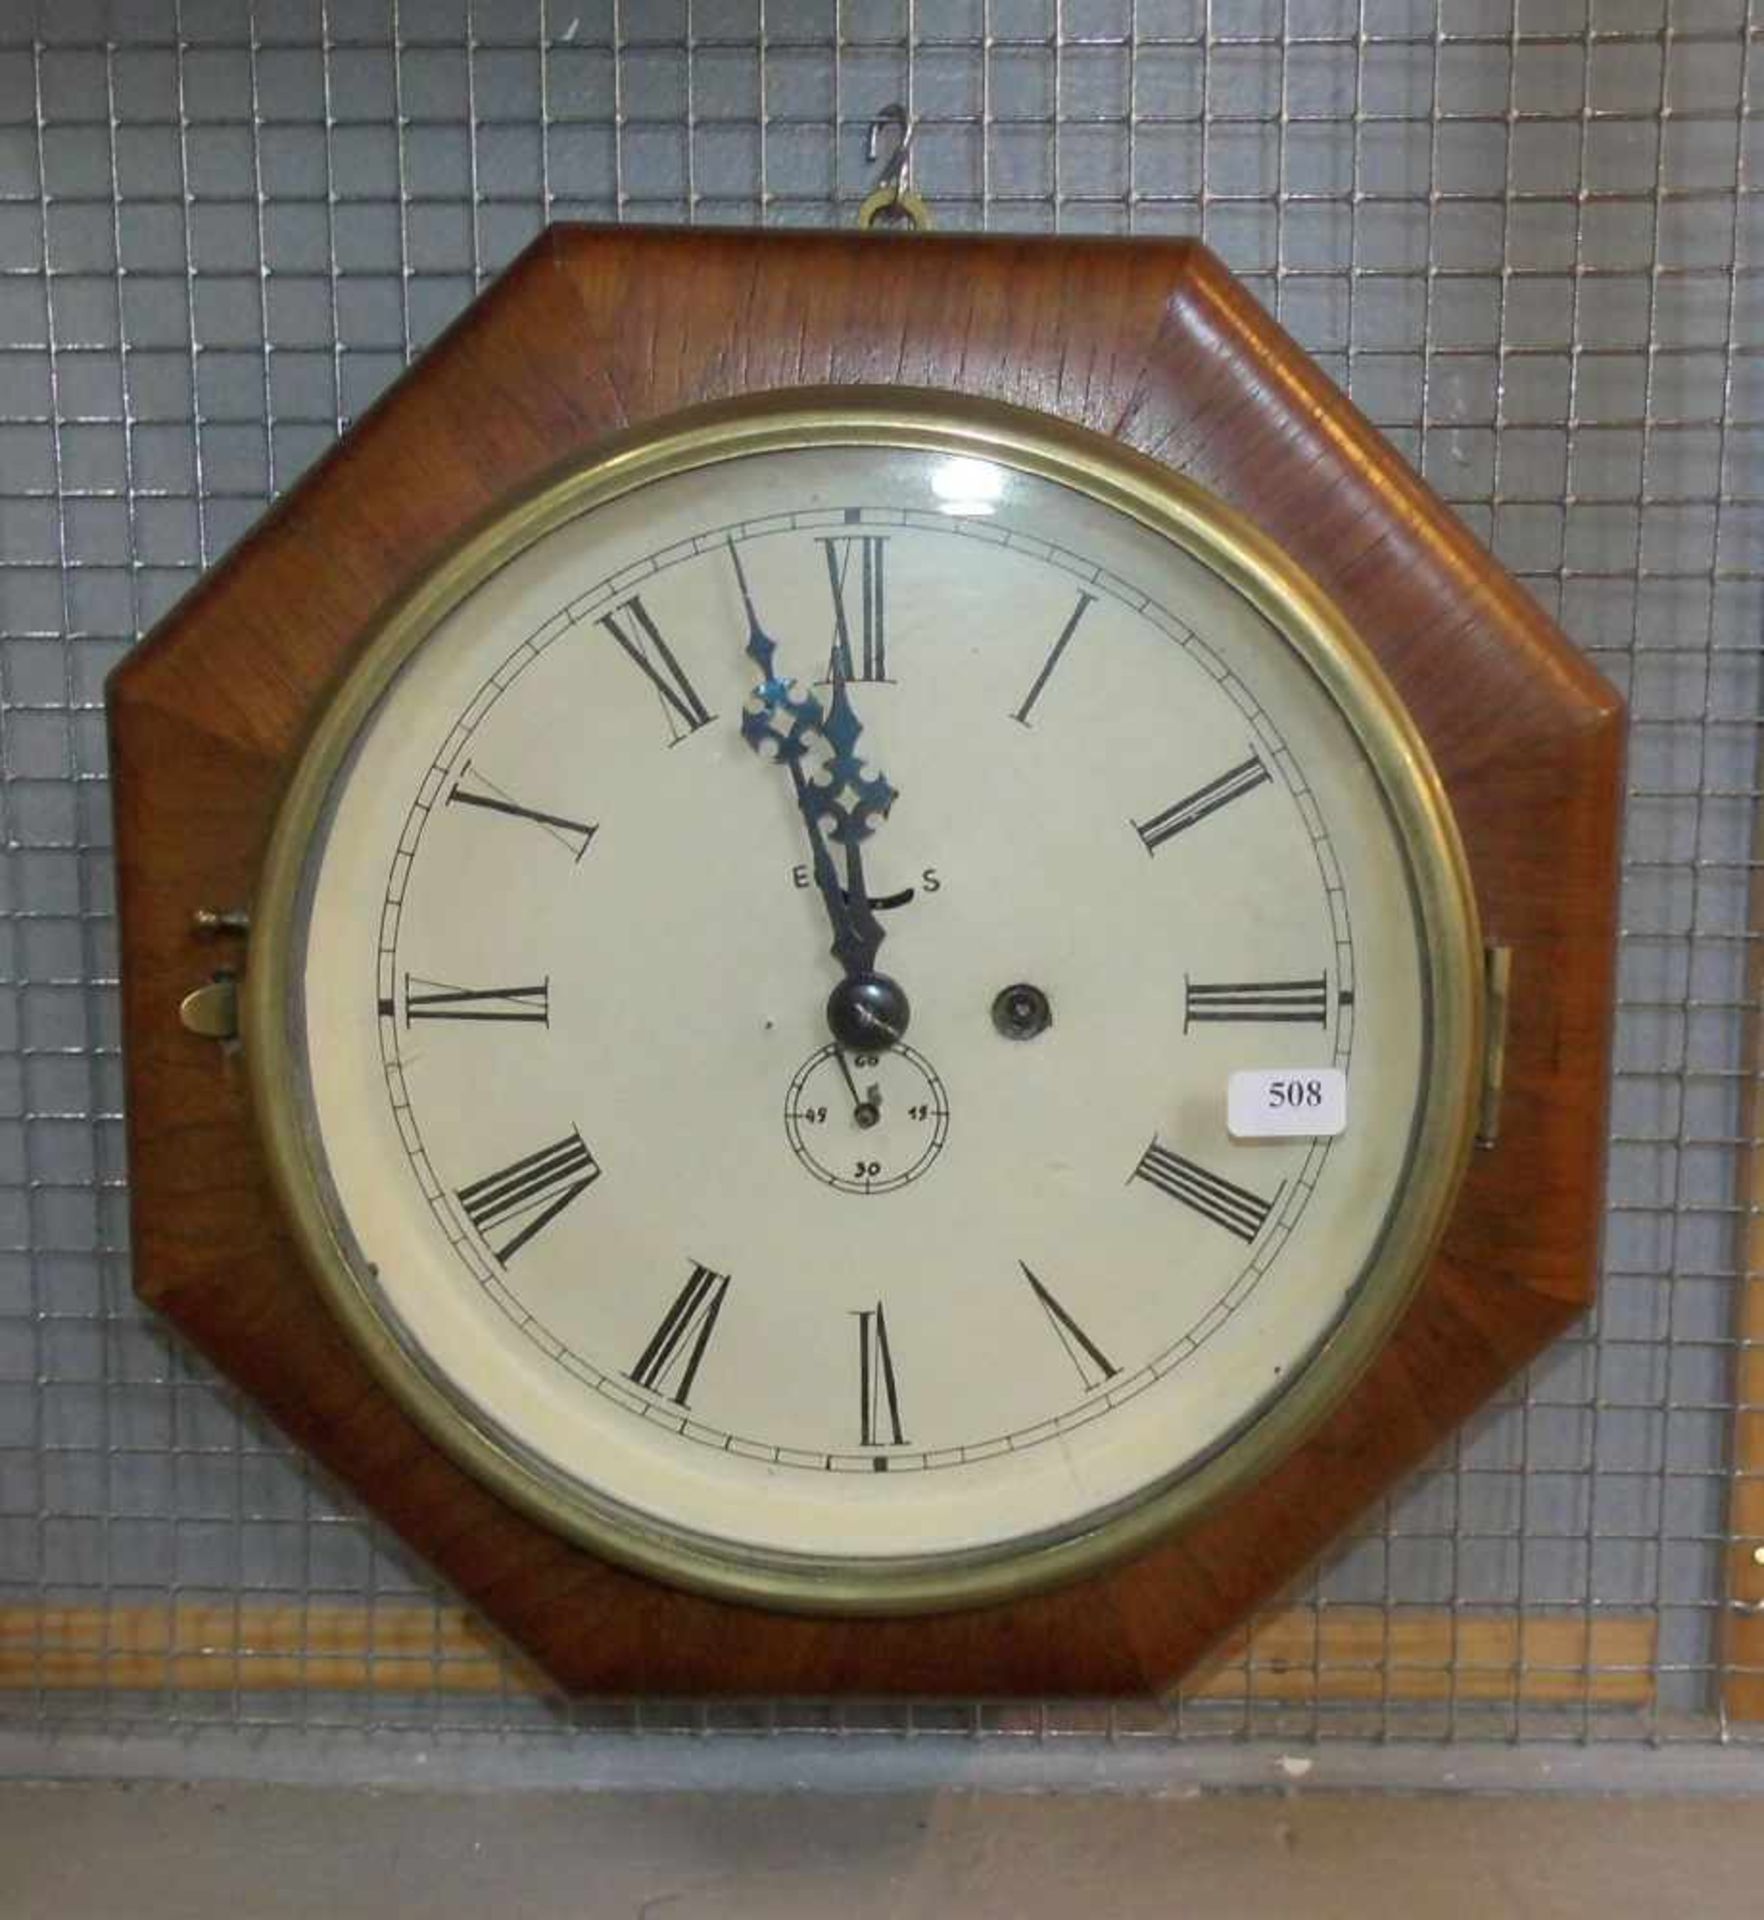 OFFICE CLOCK, oktogonales Holzgehäuse, lackiertes Zifferblatt mit Stunde, Minute und kleiner Sekunde